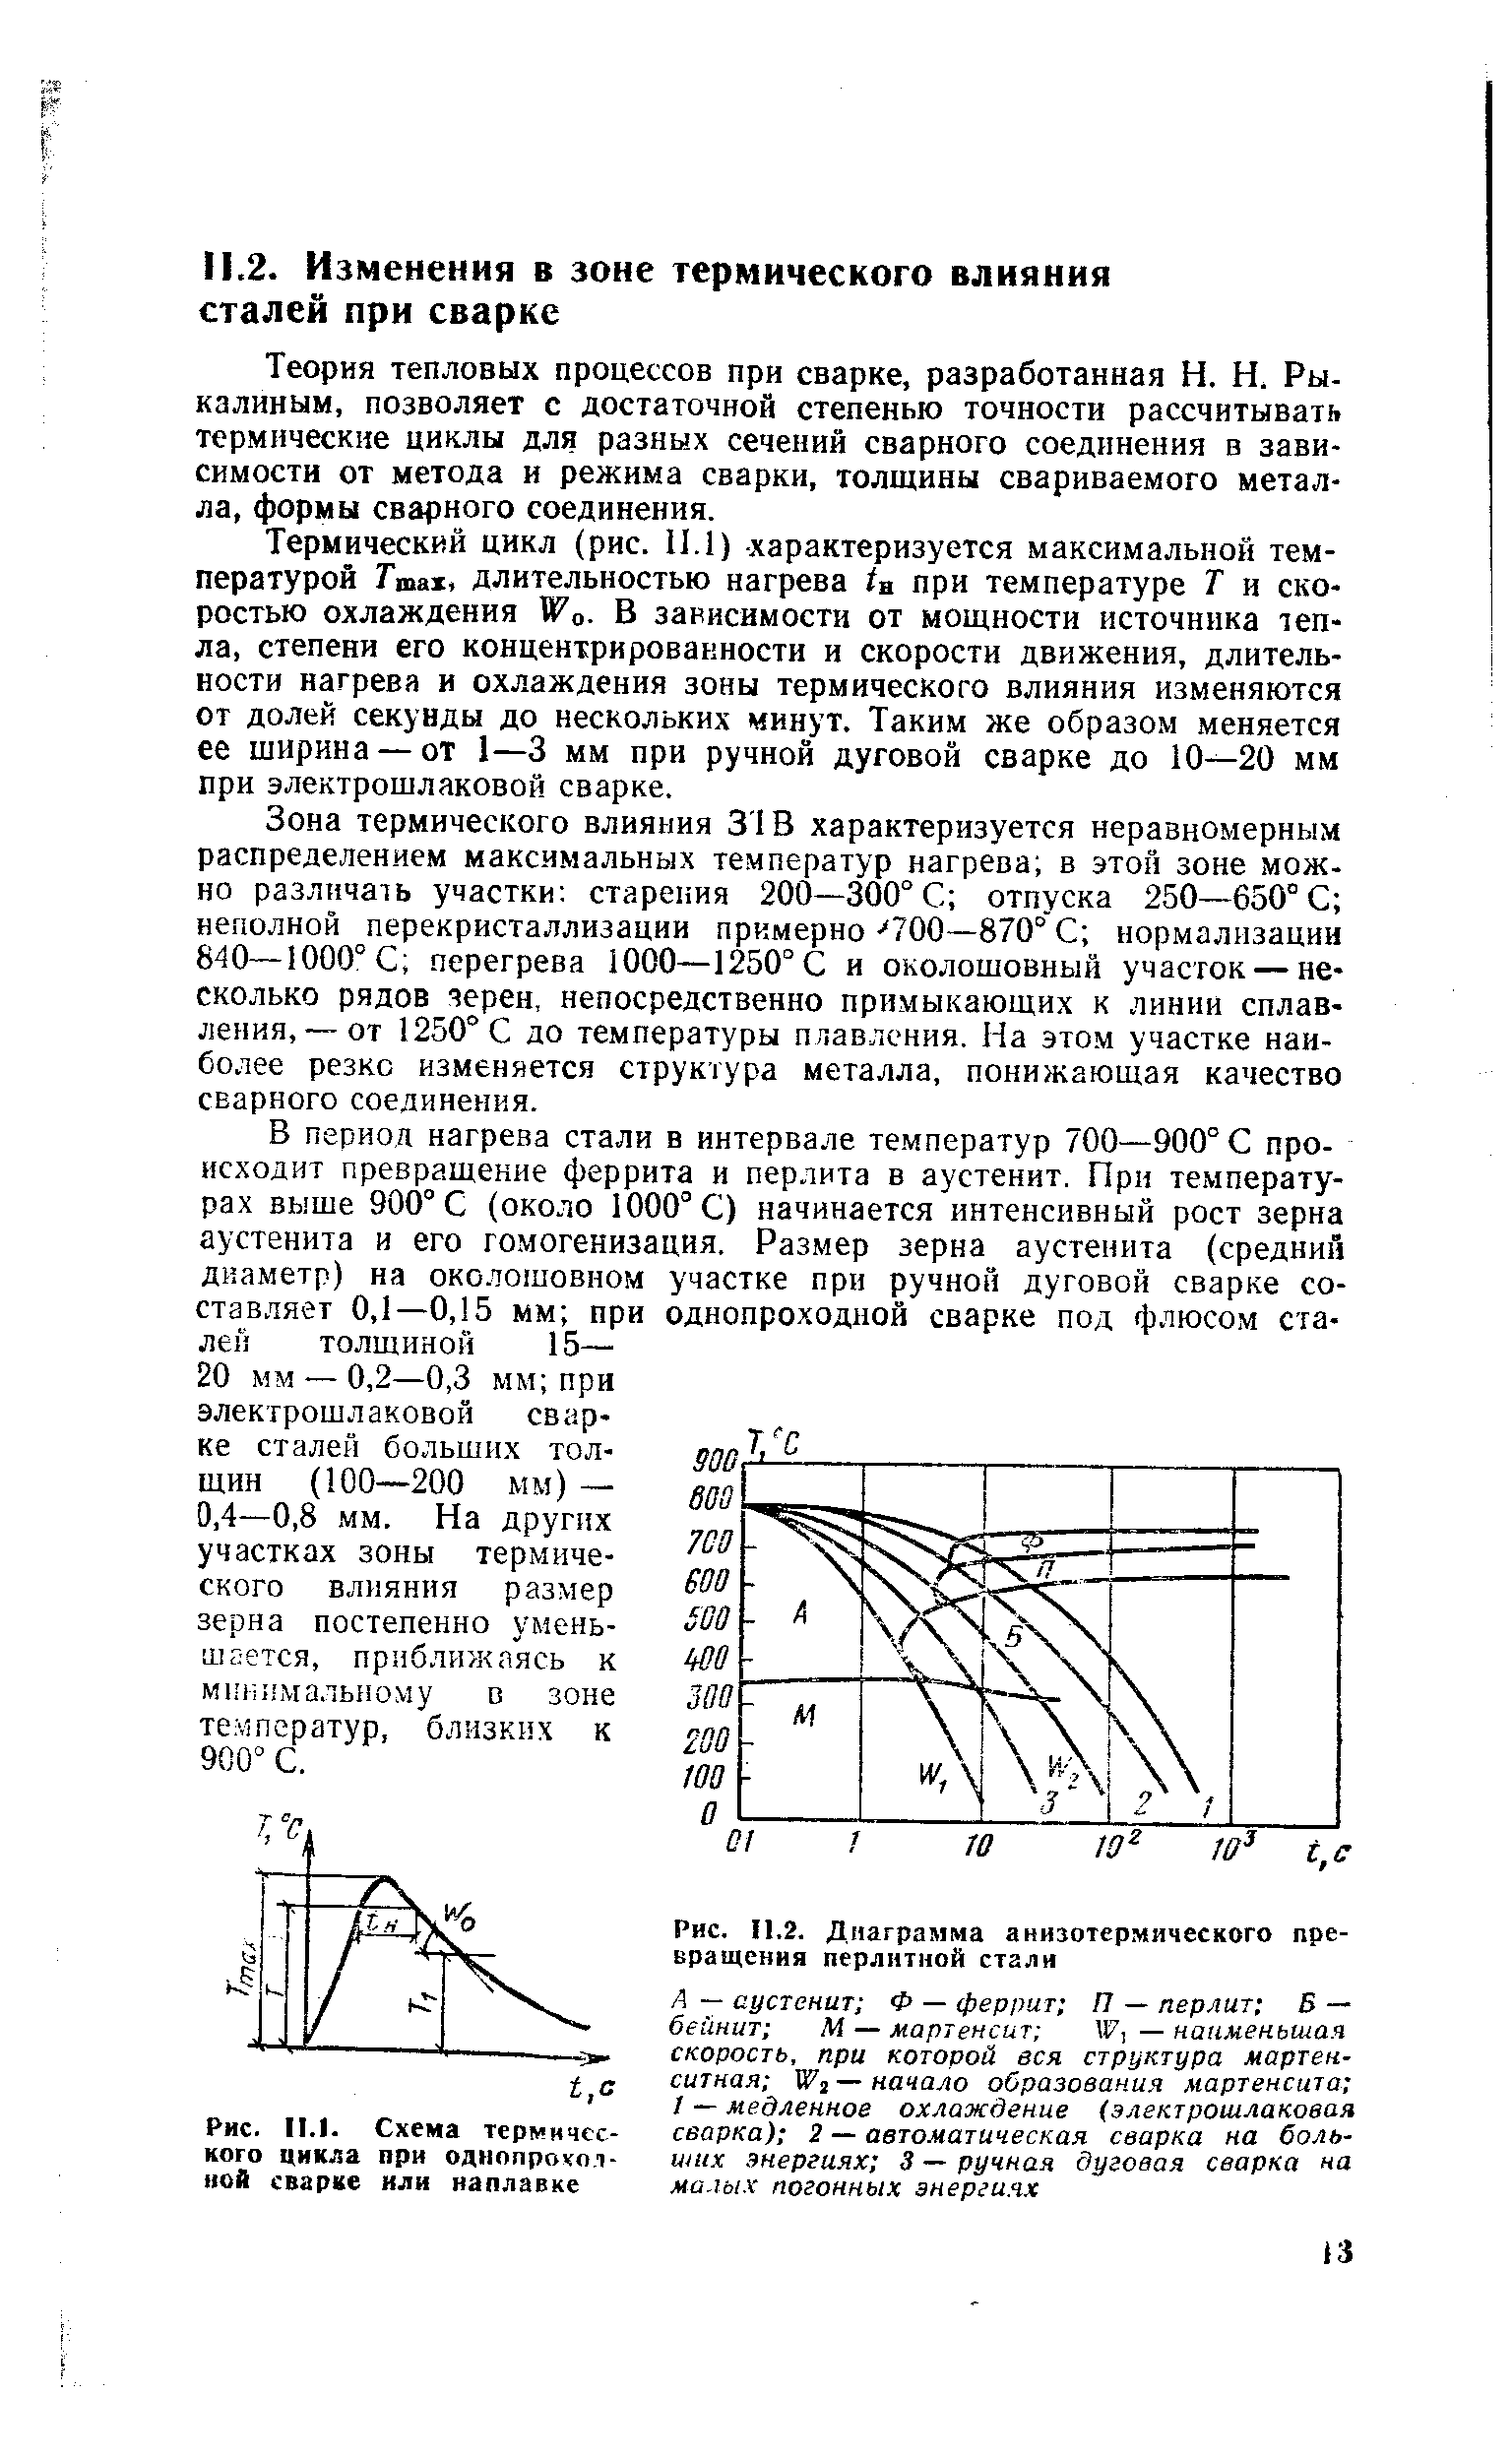 Рис. 11.2. <a href="/info/7189">Диаграмма анизотермического превращения</a> перлитной стали
